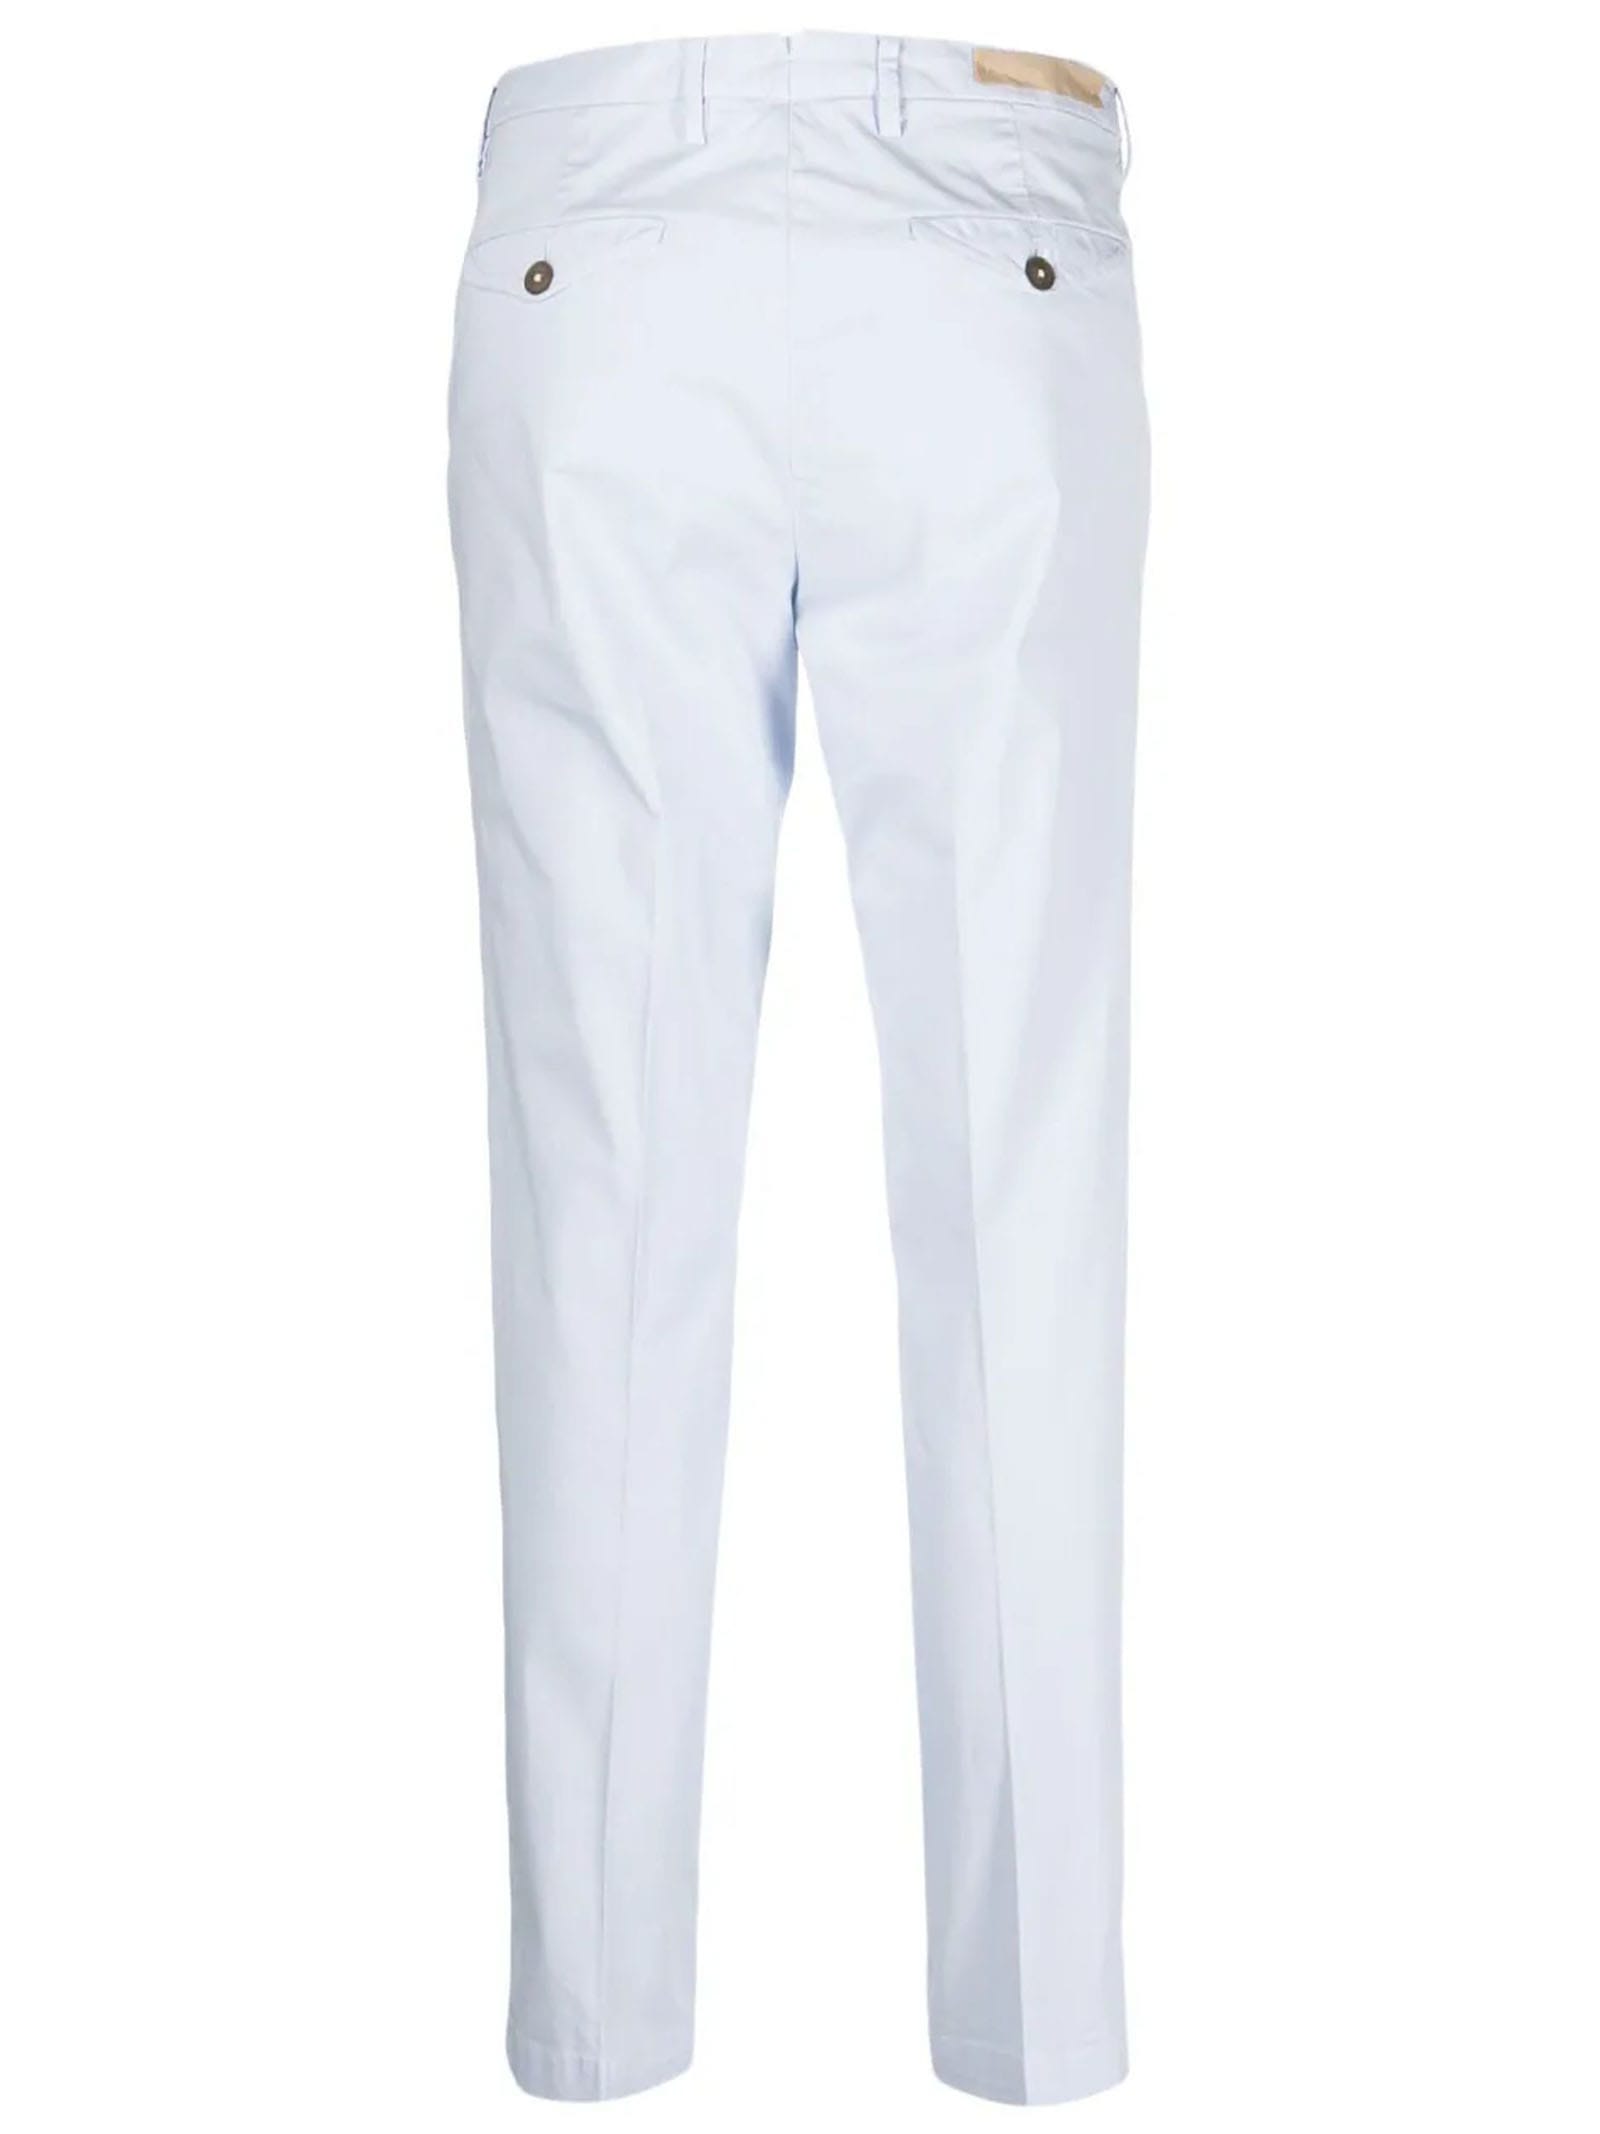 Shop Briglia 1949 White Cotton Trousers In Light Blue